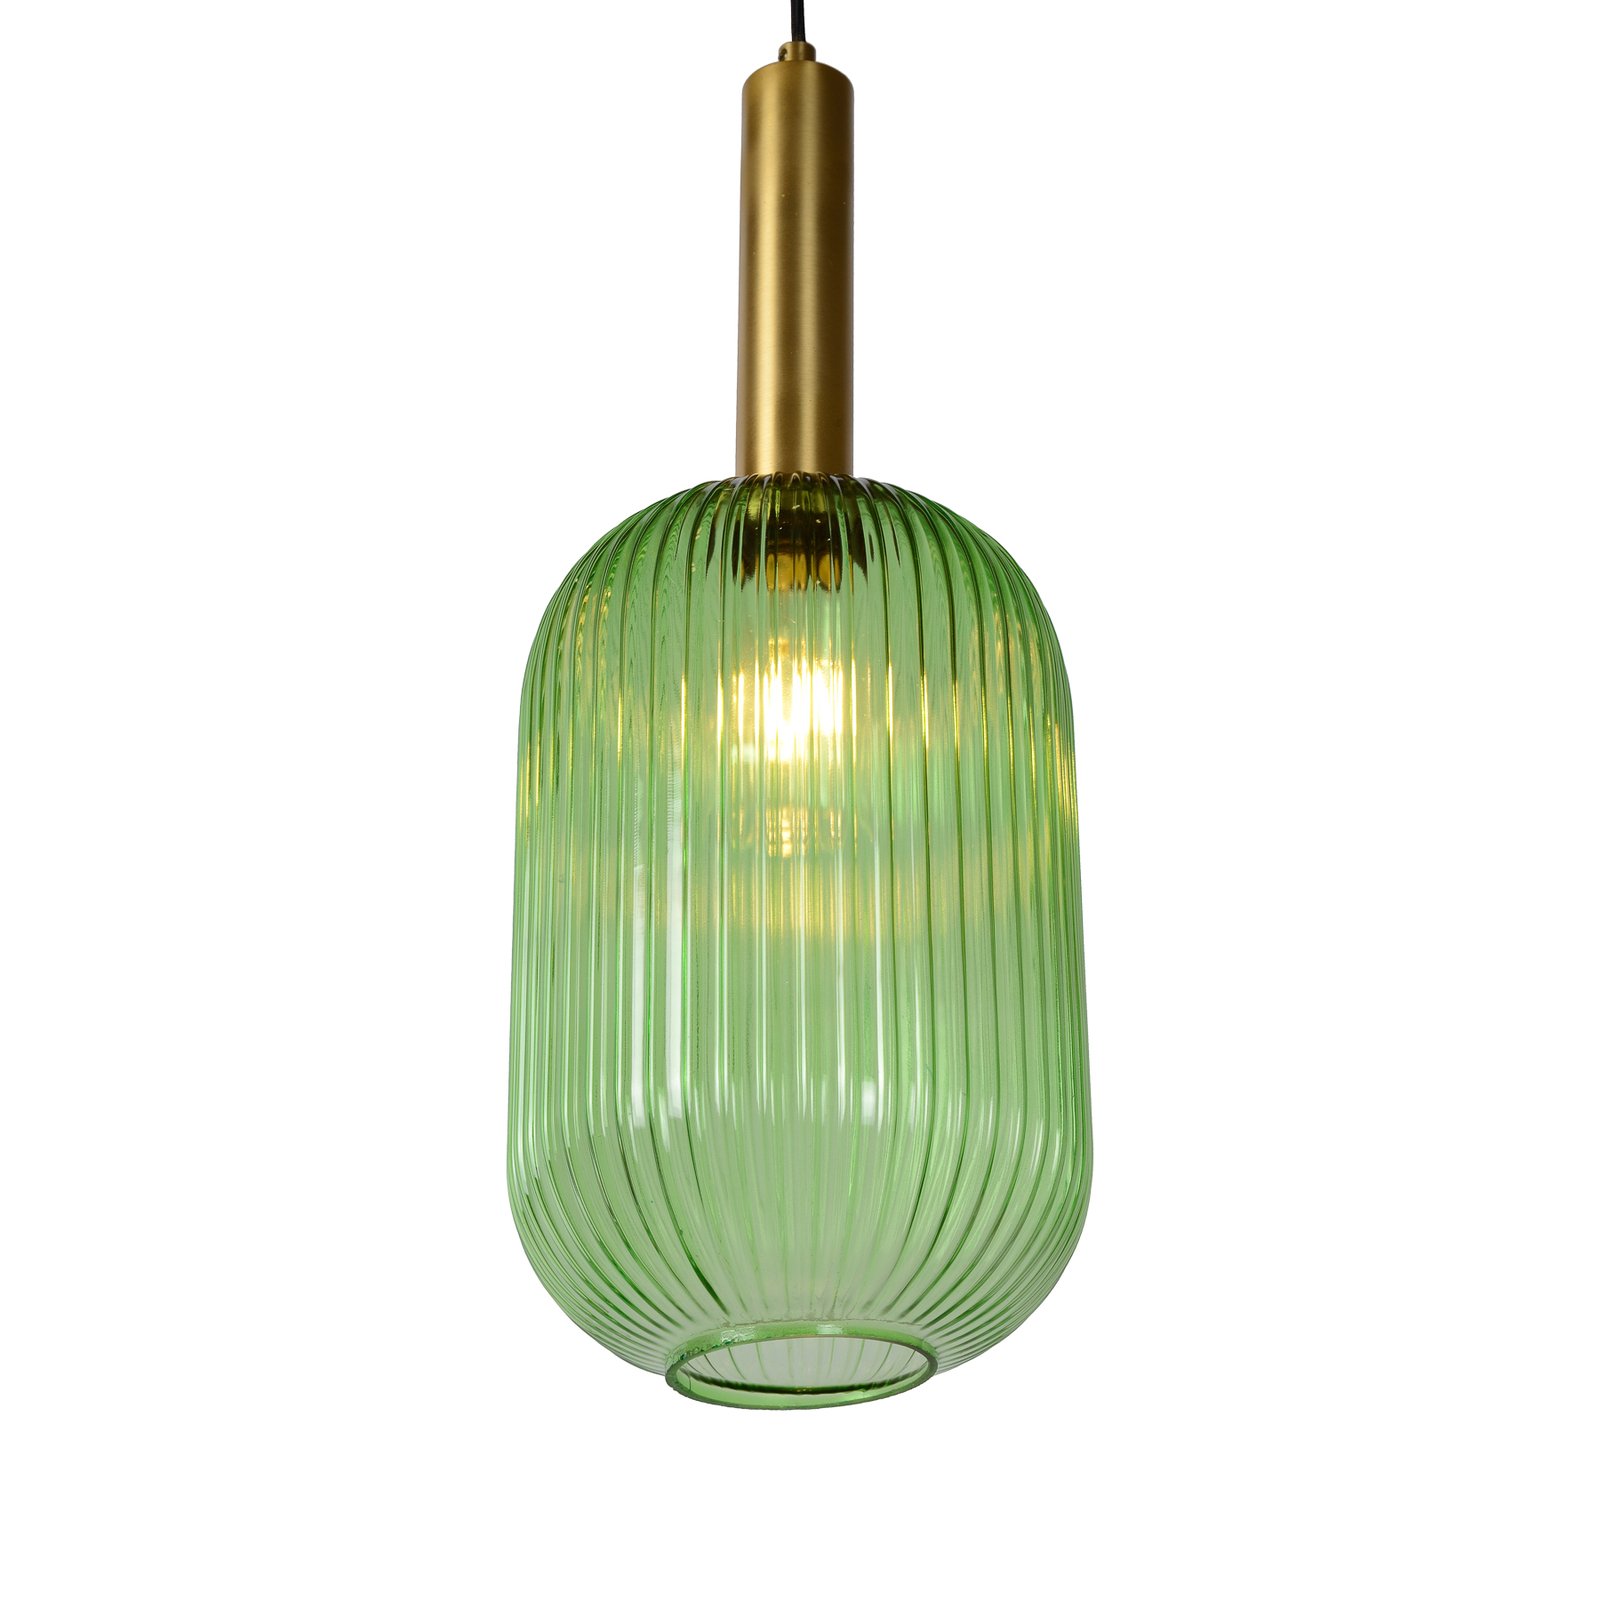 Maloto lampă suspendată din sticlă, Ø 20 cm, verde